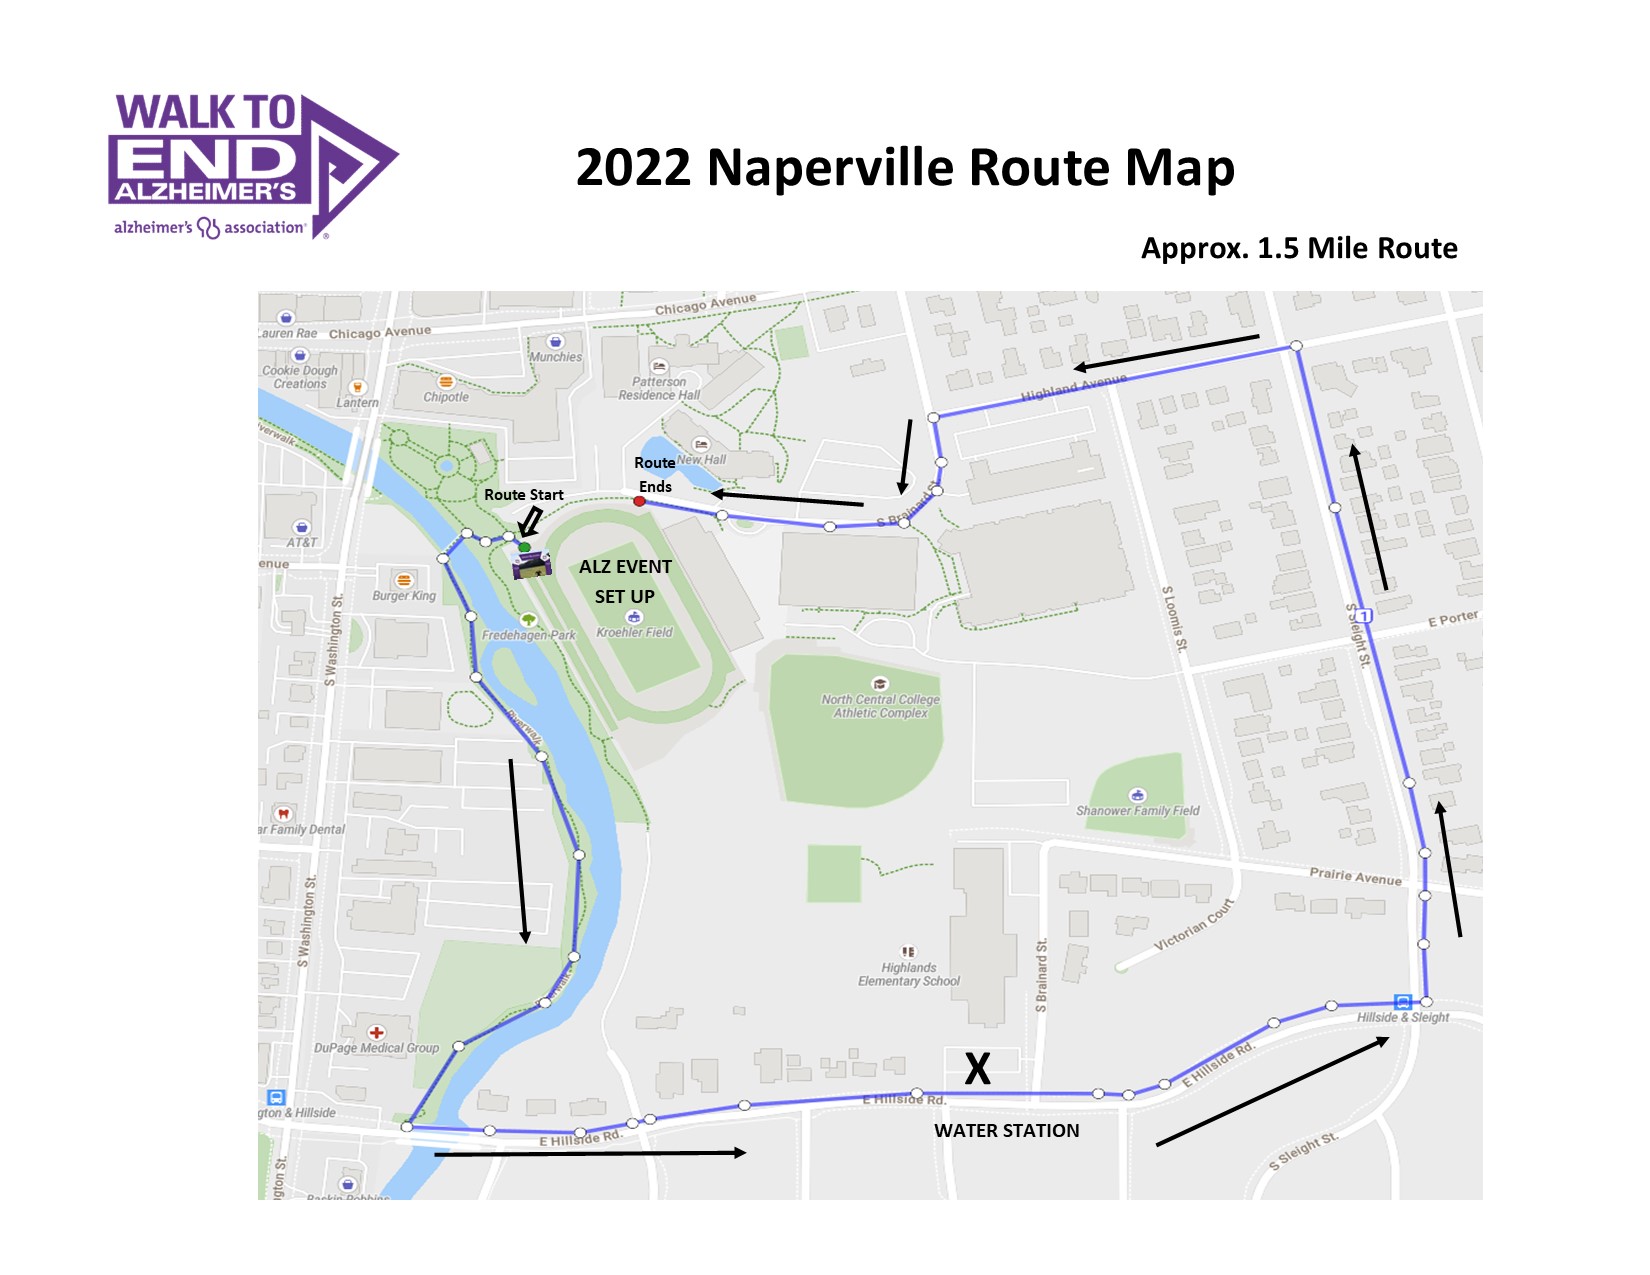 Mapa de ruta de Naperville 2022.jpg